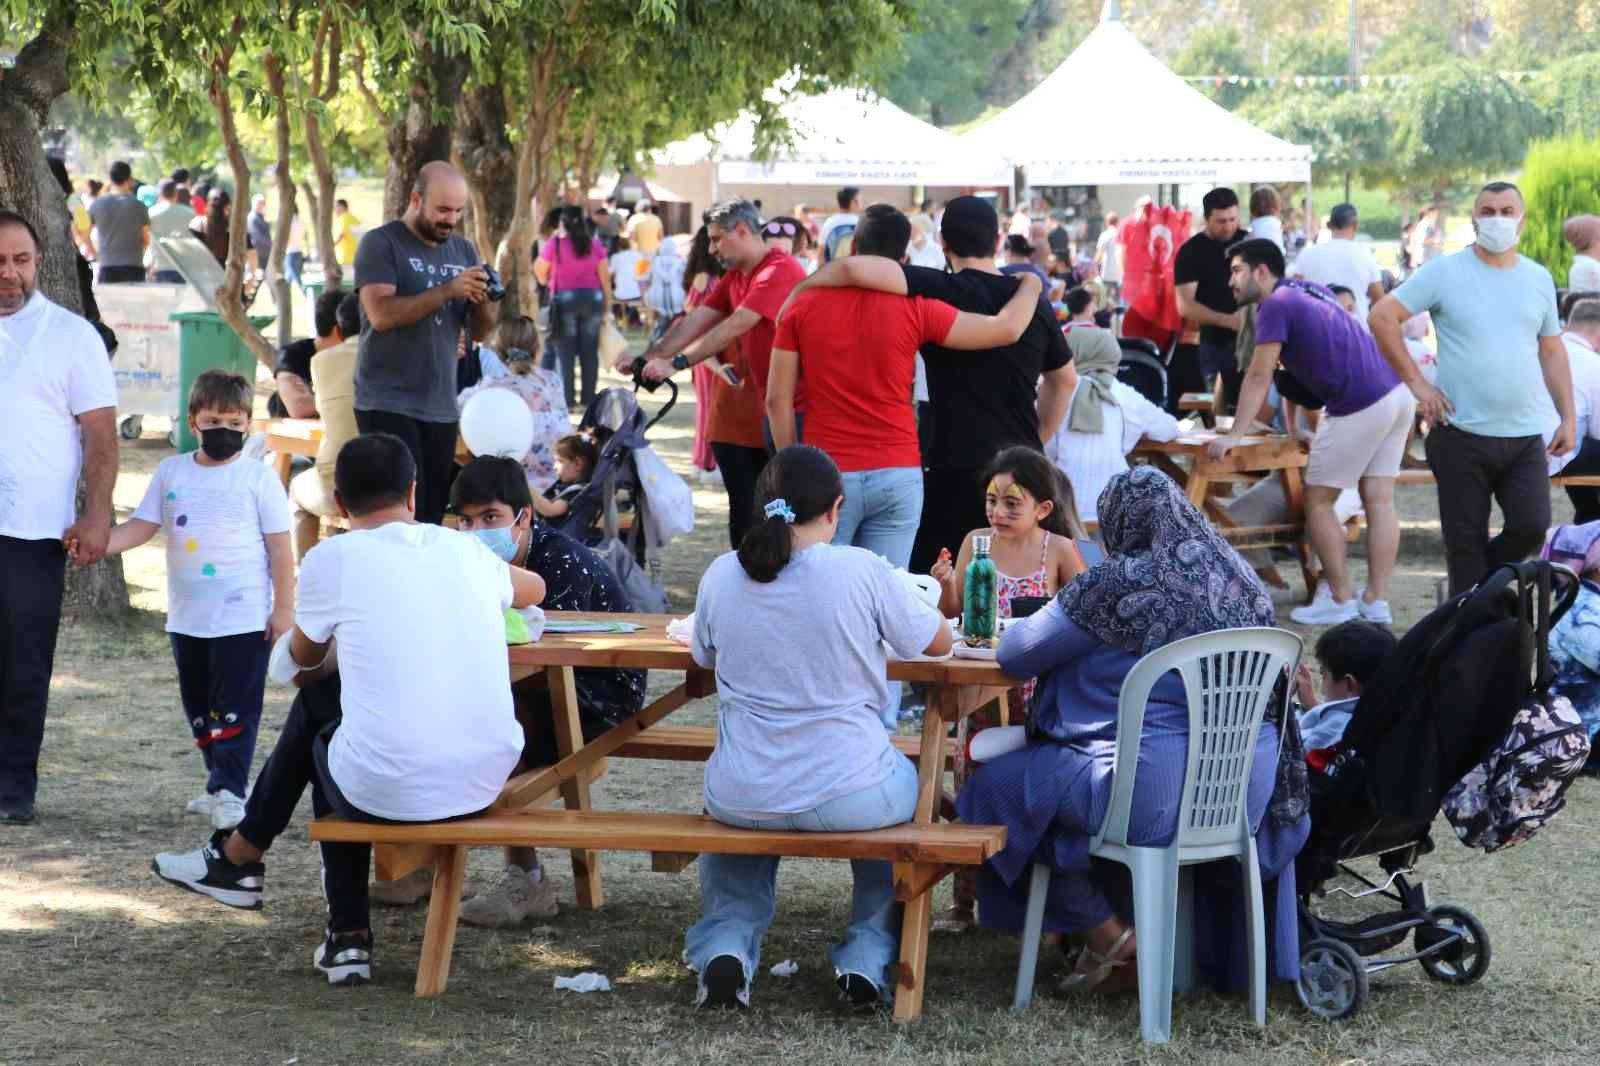 Uluslararası Adana Lezzet Festivali şehre 150 milyon TL katkı sağladı